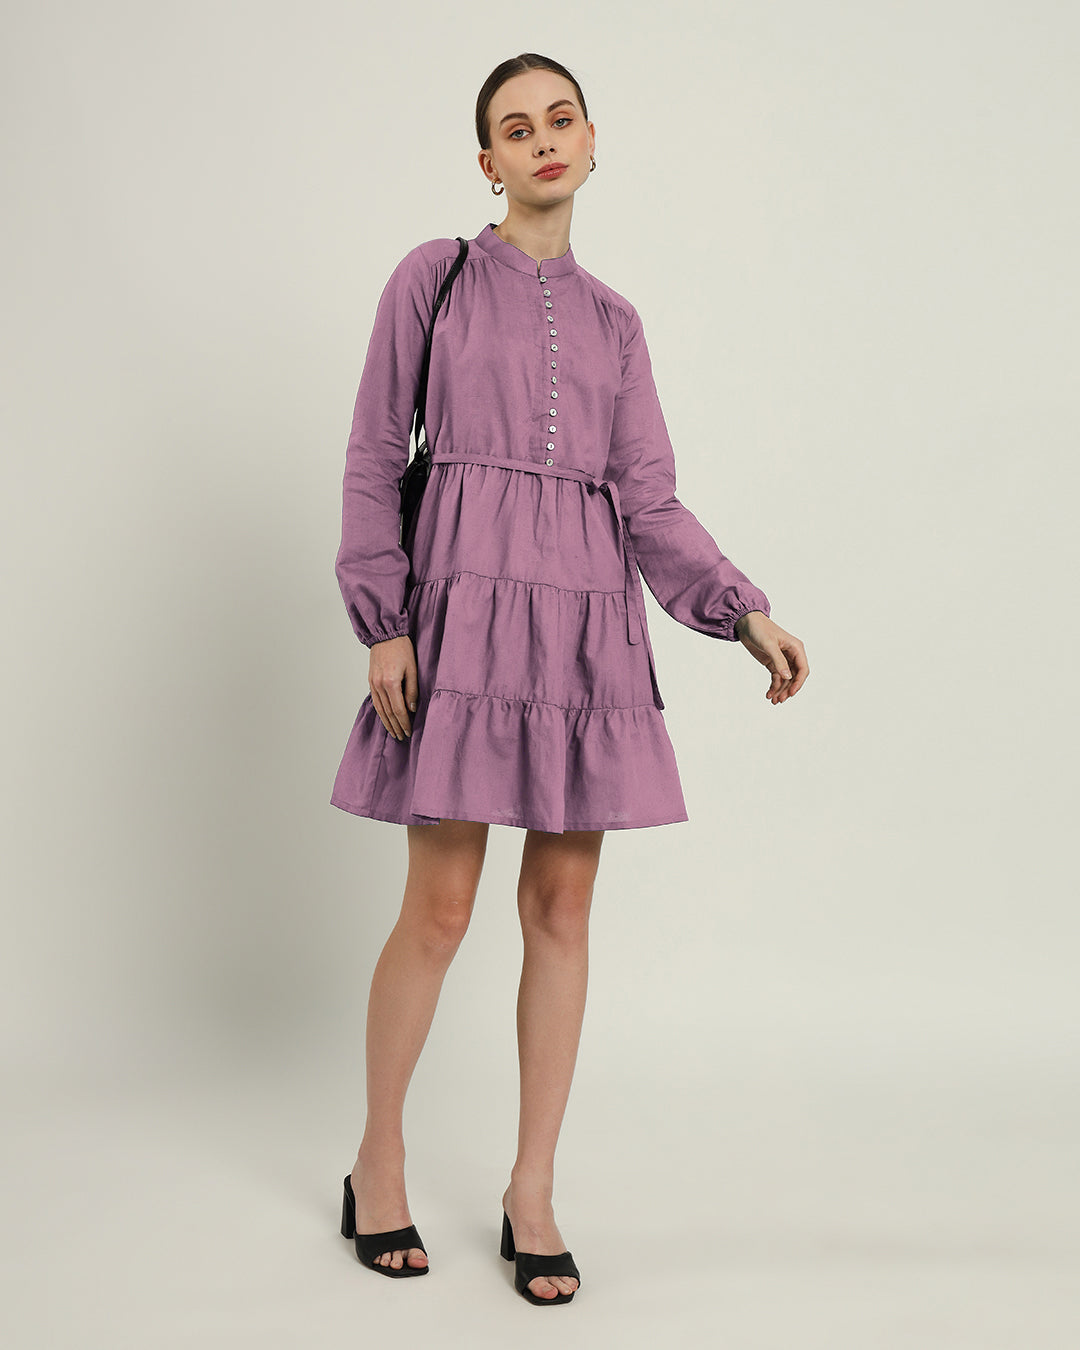 The Ely Purple Swirl Dress